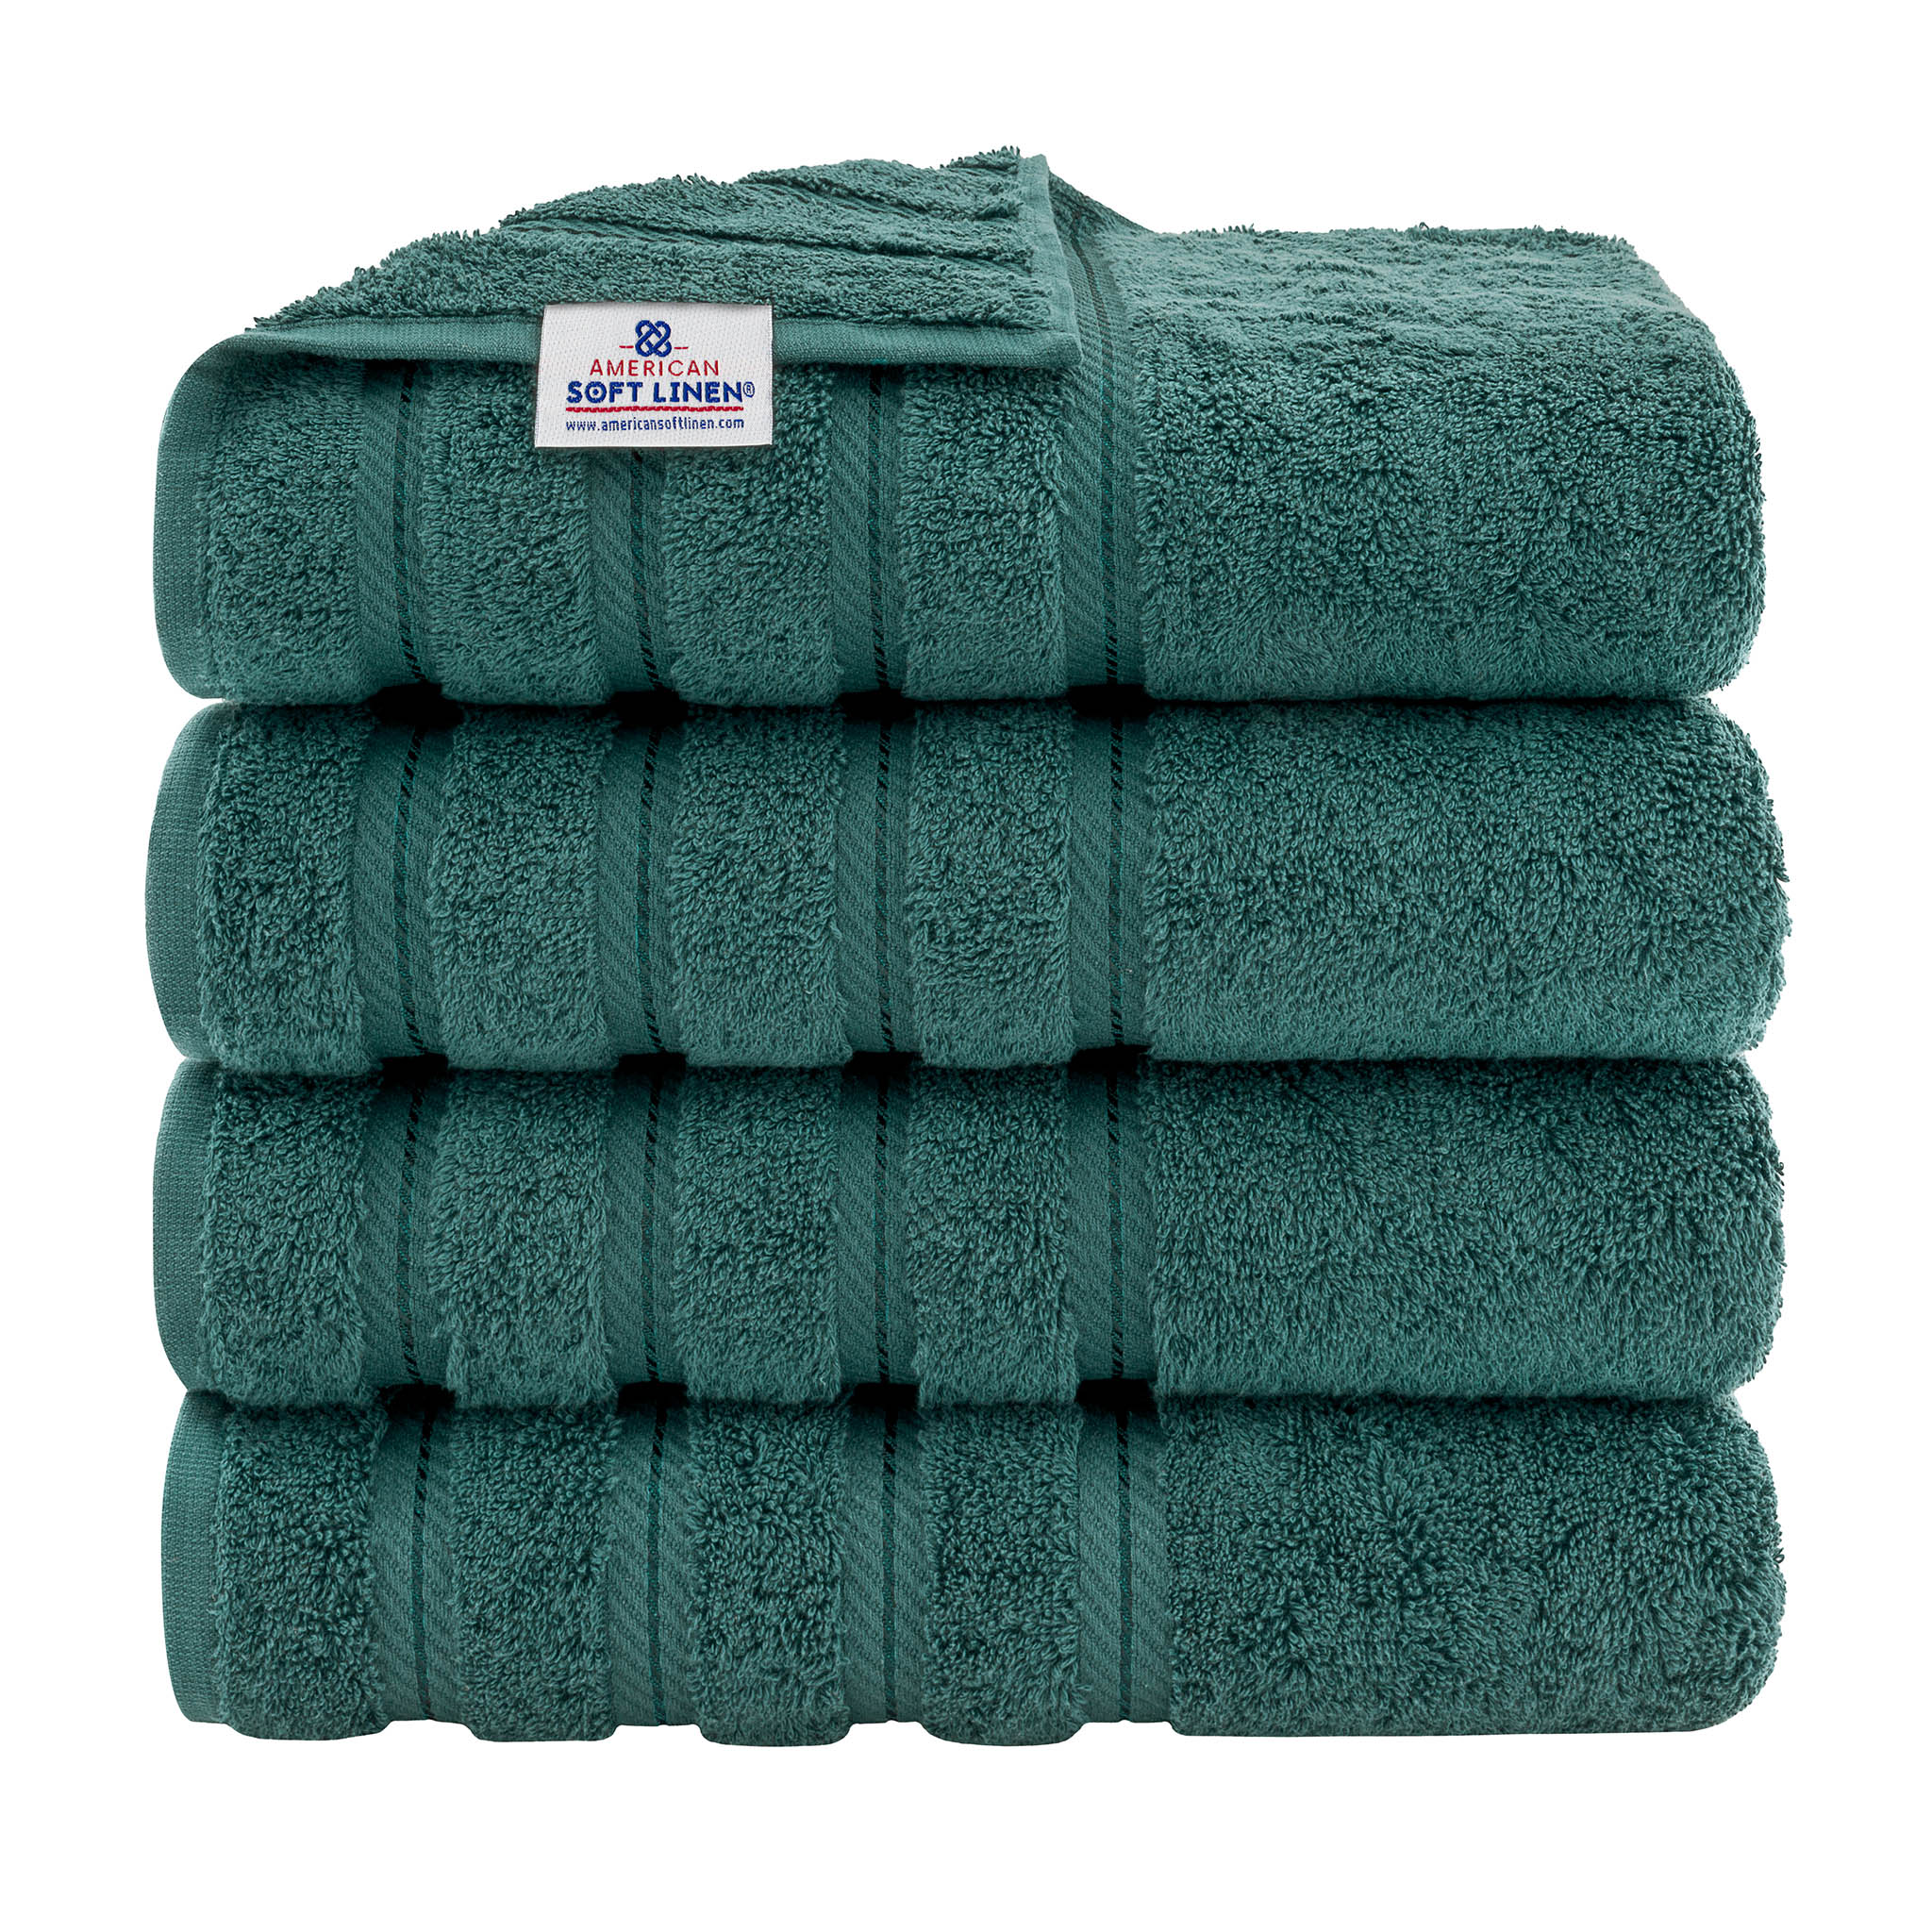 American Soft Linen 100% Turkish Cotton 4 Pack Bath Towel Set Wholesale colonial-blue-1